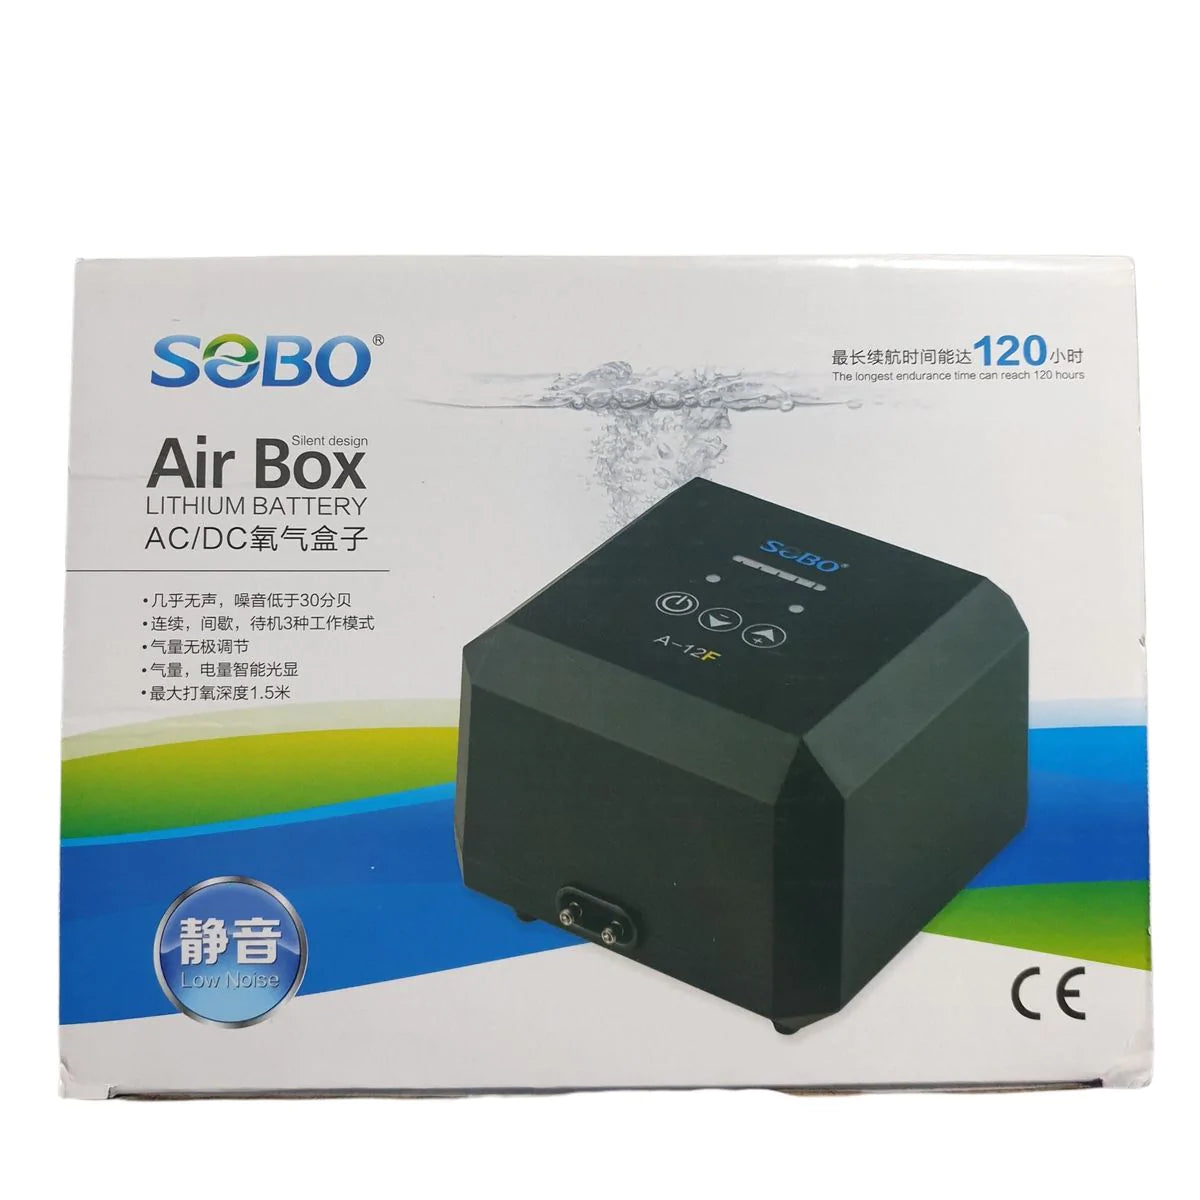 AC DC AIR BOX A12F